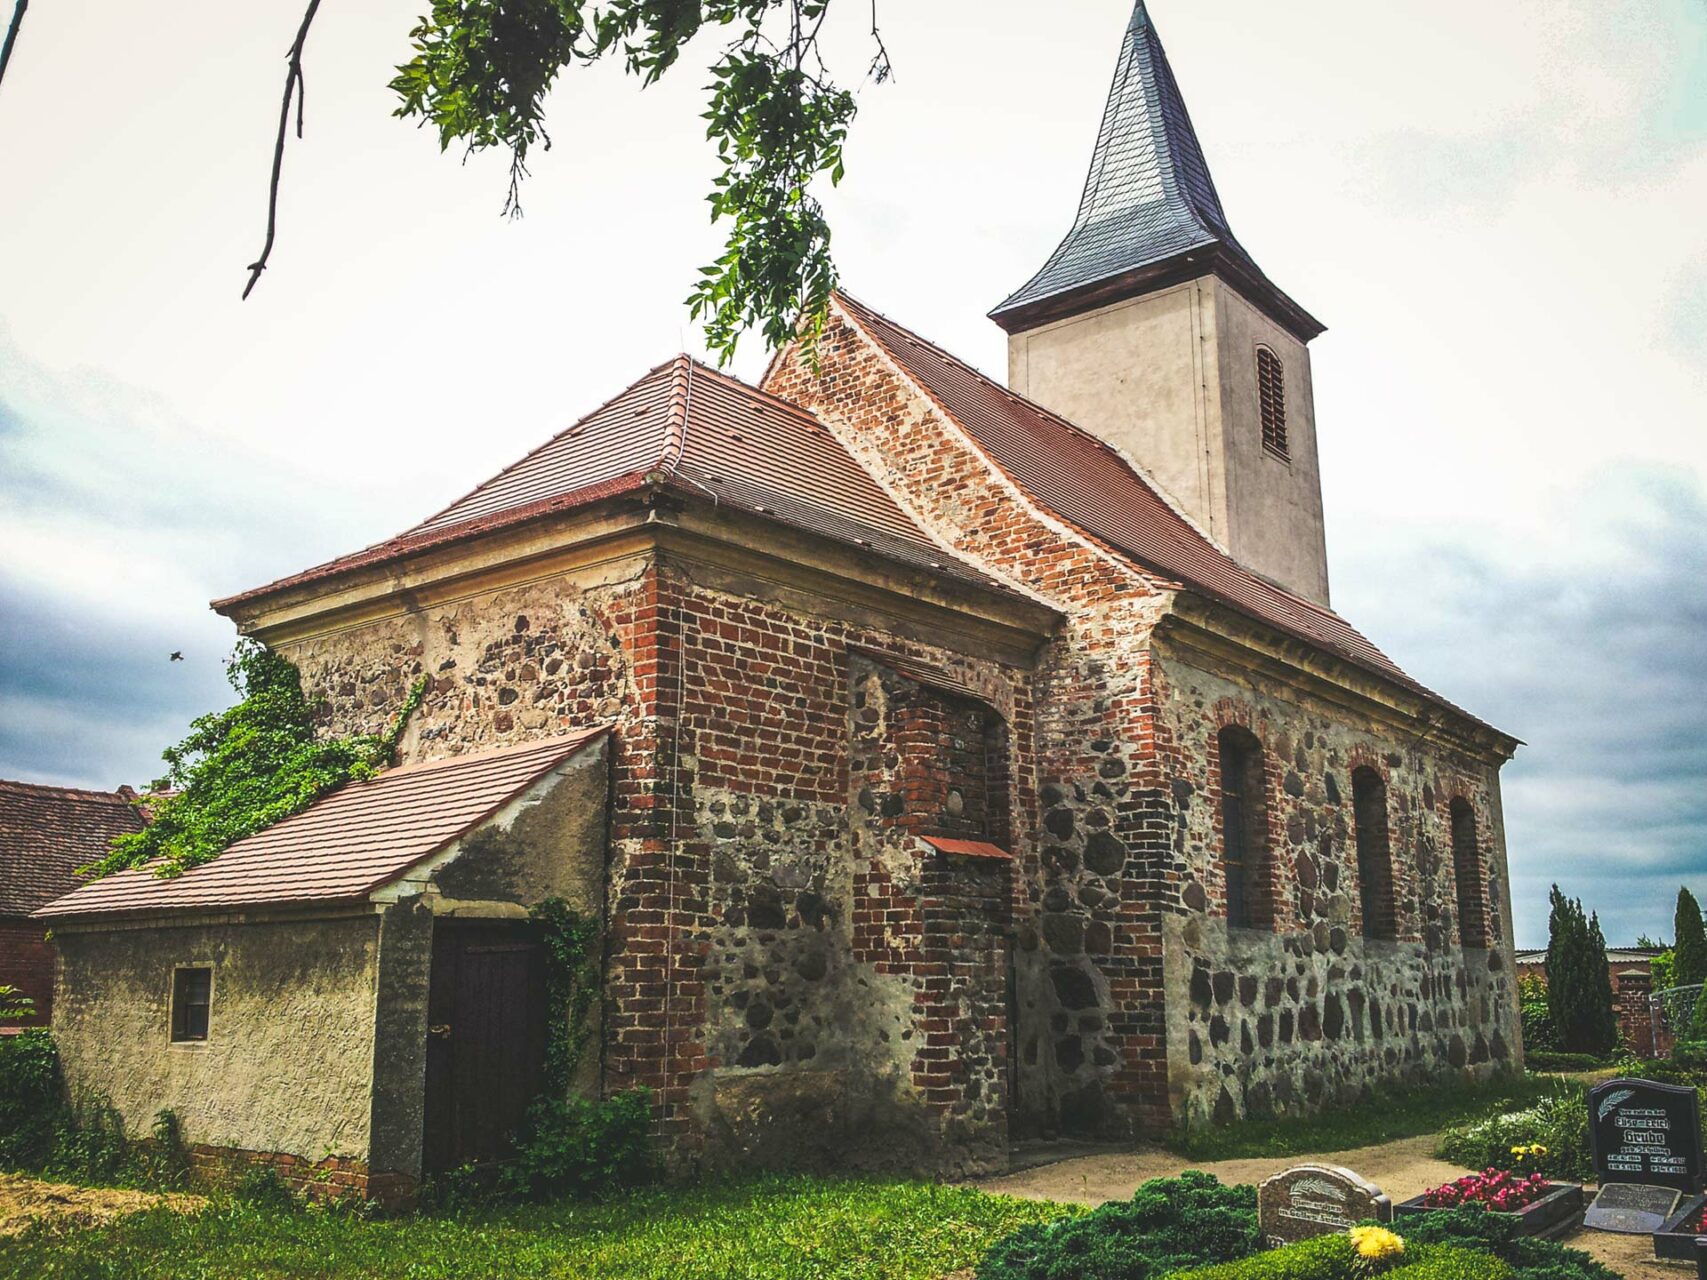 Stilmischung: Die Kirche in Grobleben wurde im 13. Jhdt. aus Feldsteinen erbaut und erfuhr nach dem 30-jährigen Krieg eine Renaissance im Barock-Stil.